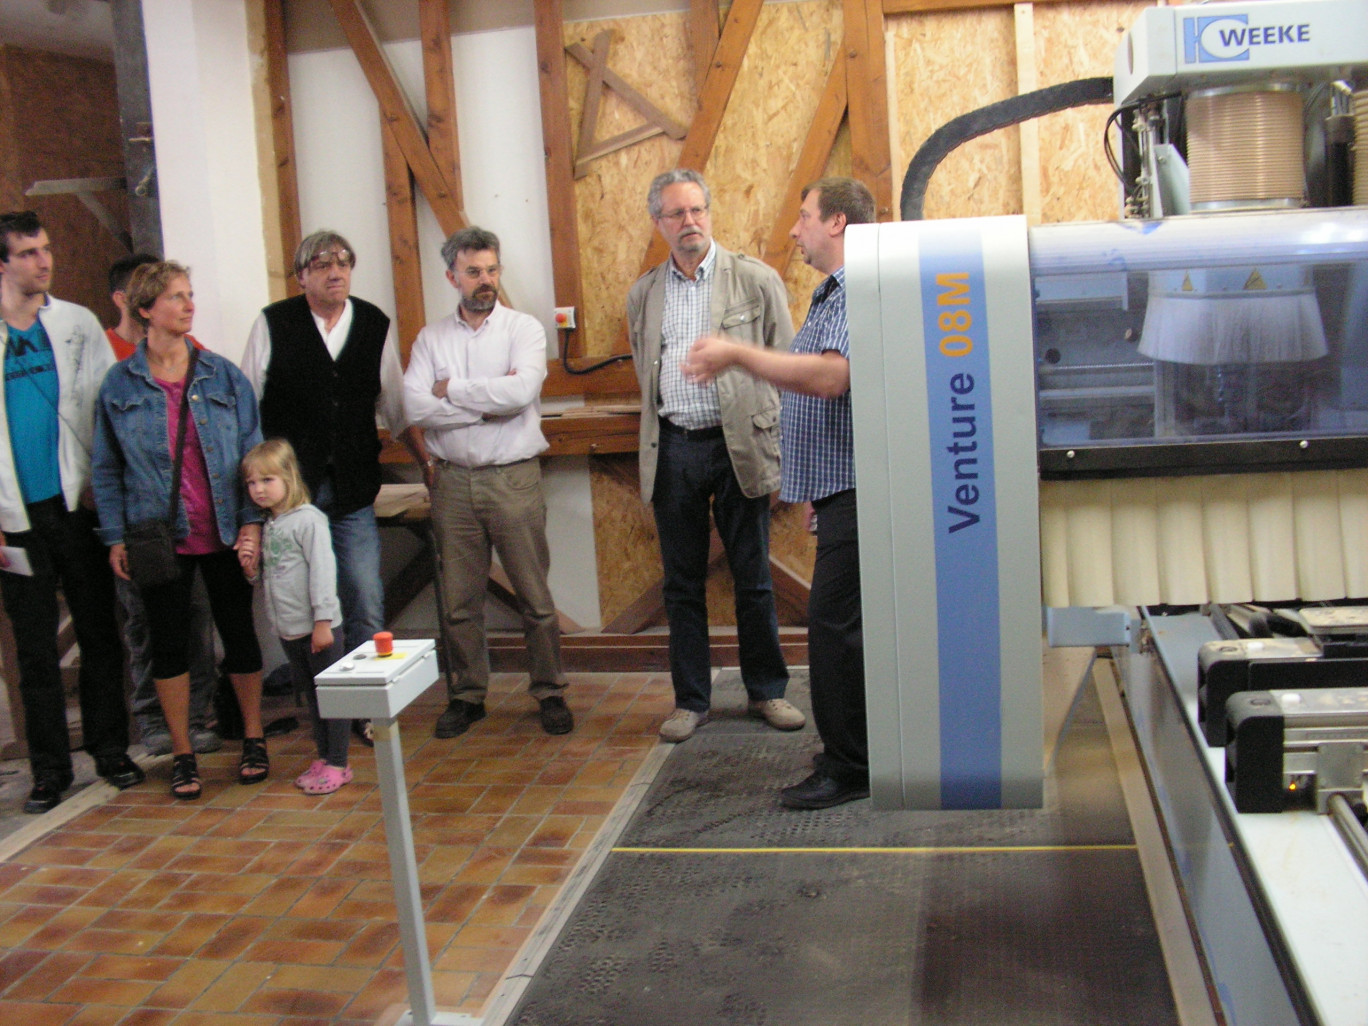 Philippe Breucq, responsable de l’atelier de menuiserie des Compagnons de Jeumont dans le Val de Sambre, près de la frontière belge. Une machine à commande numérique de fabrication allemande.